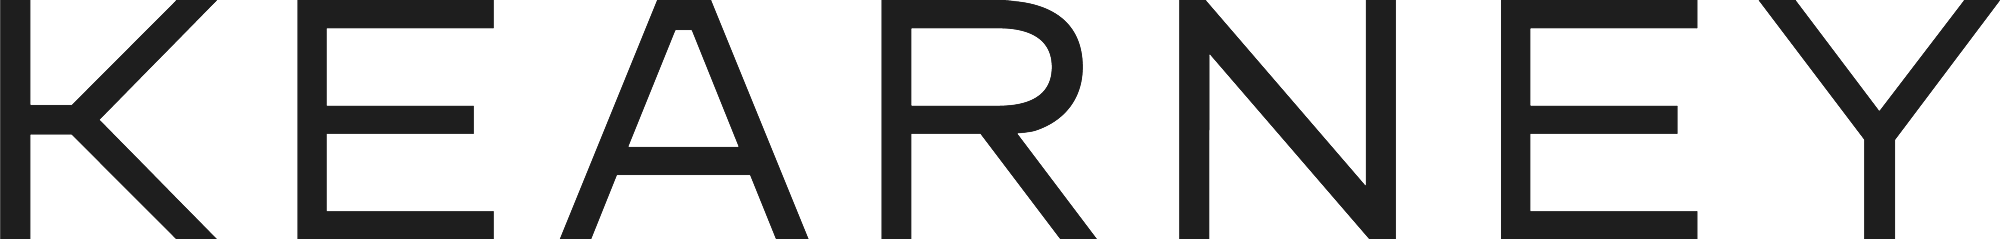 Kearney-Logo-RGB-2000x239 copy.png